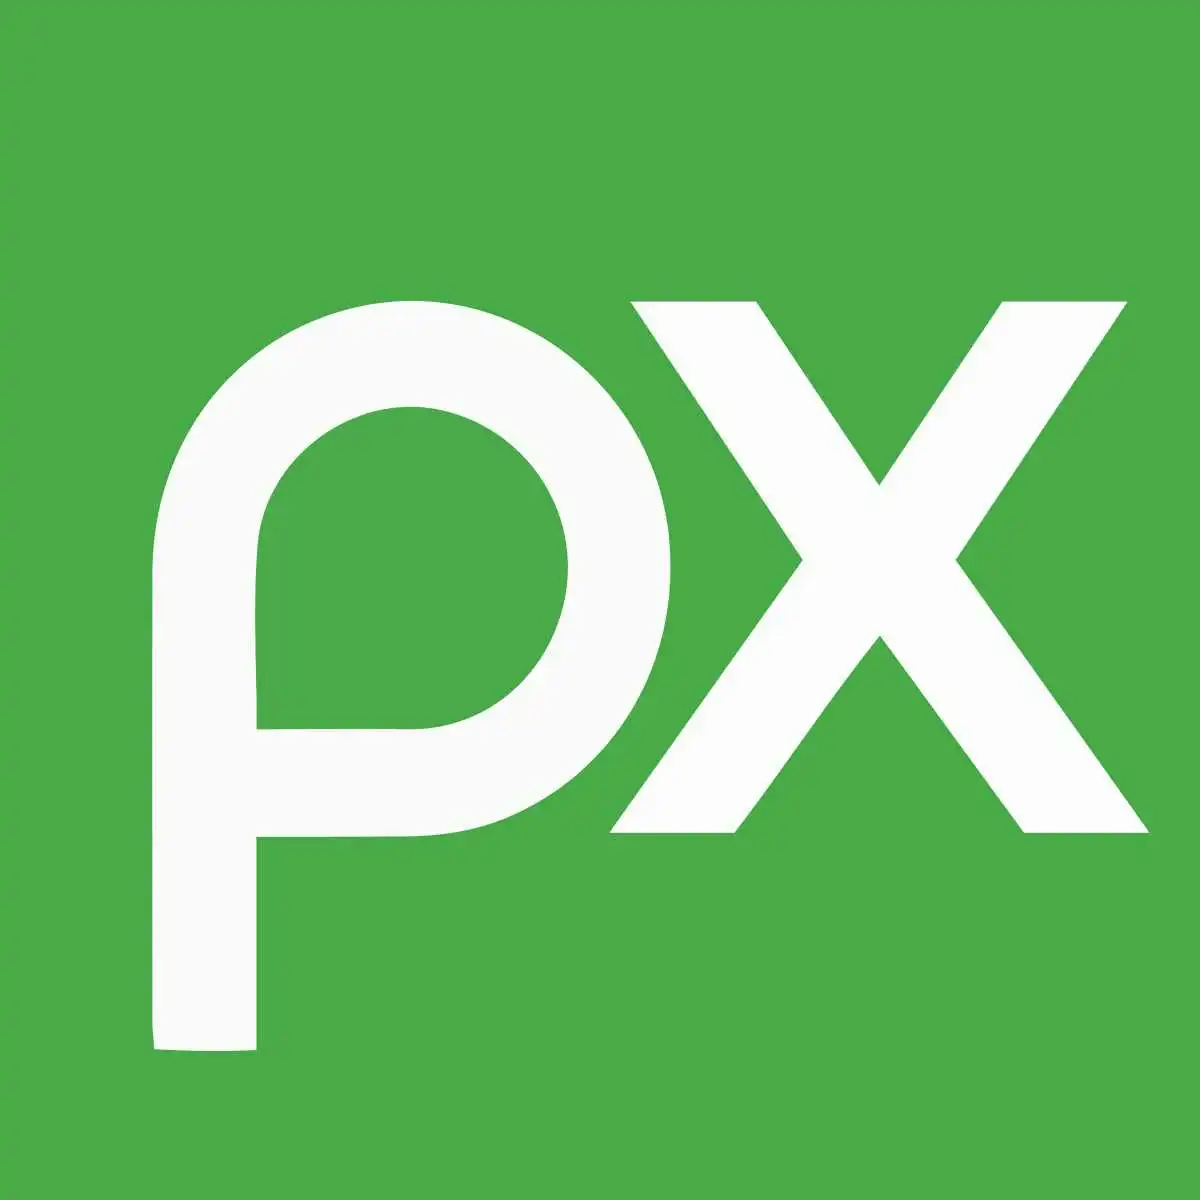 pixabay website development cost